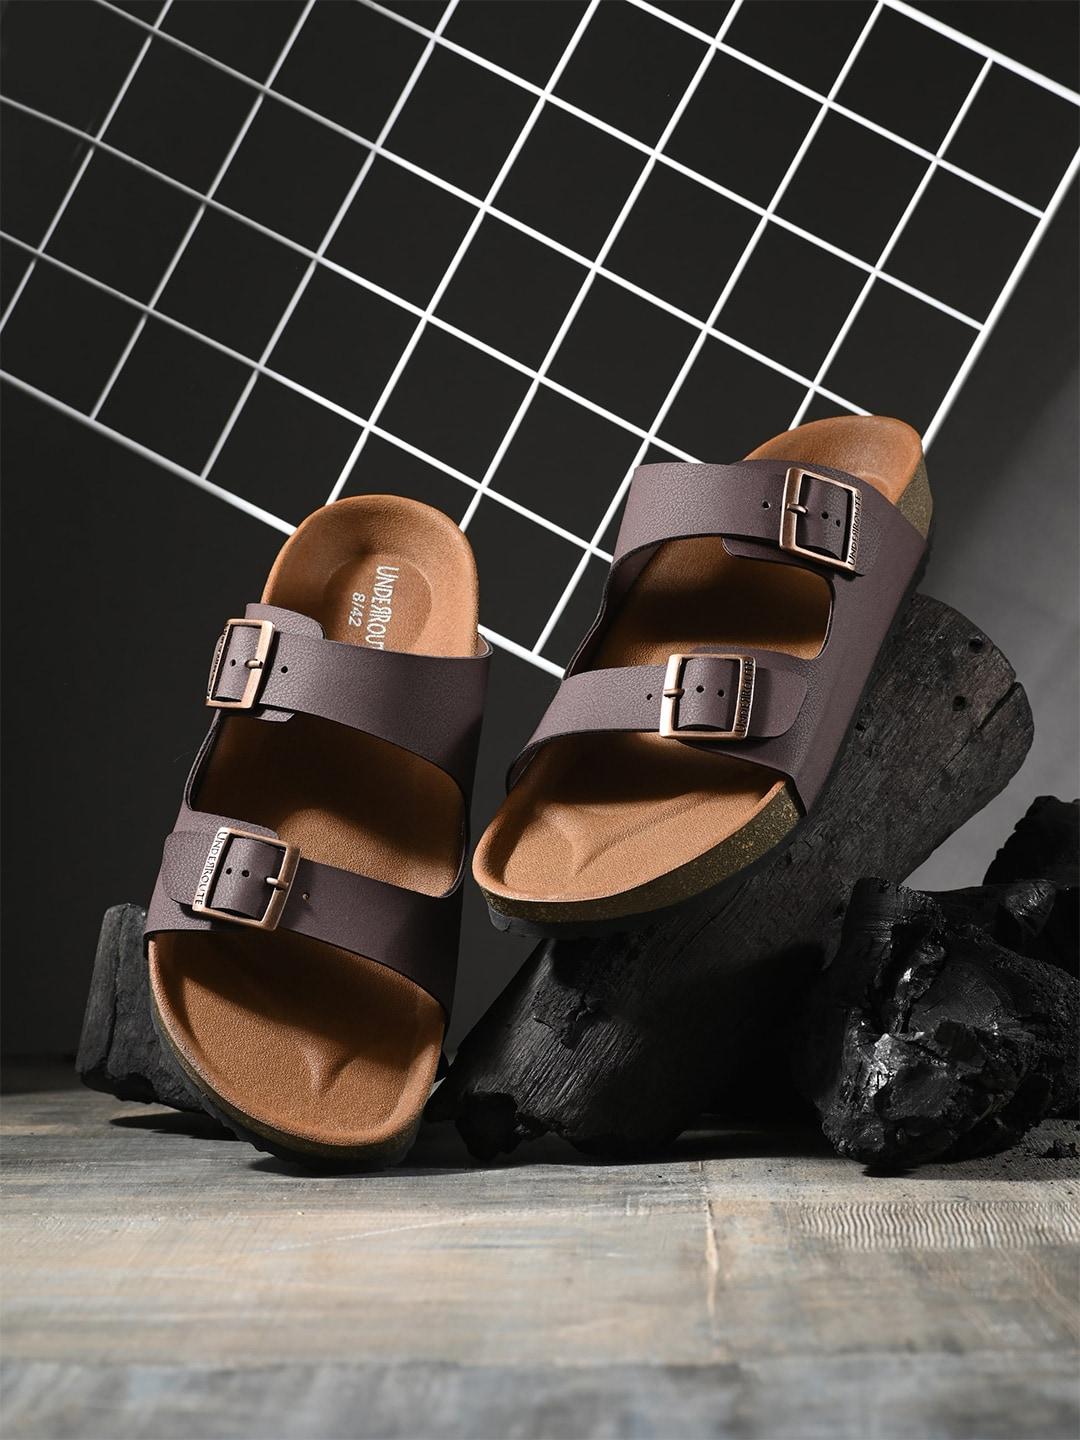 underroute-men-comfort-sandals